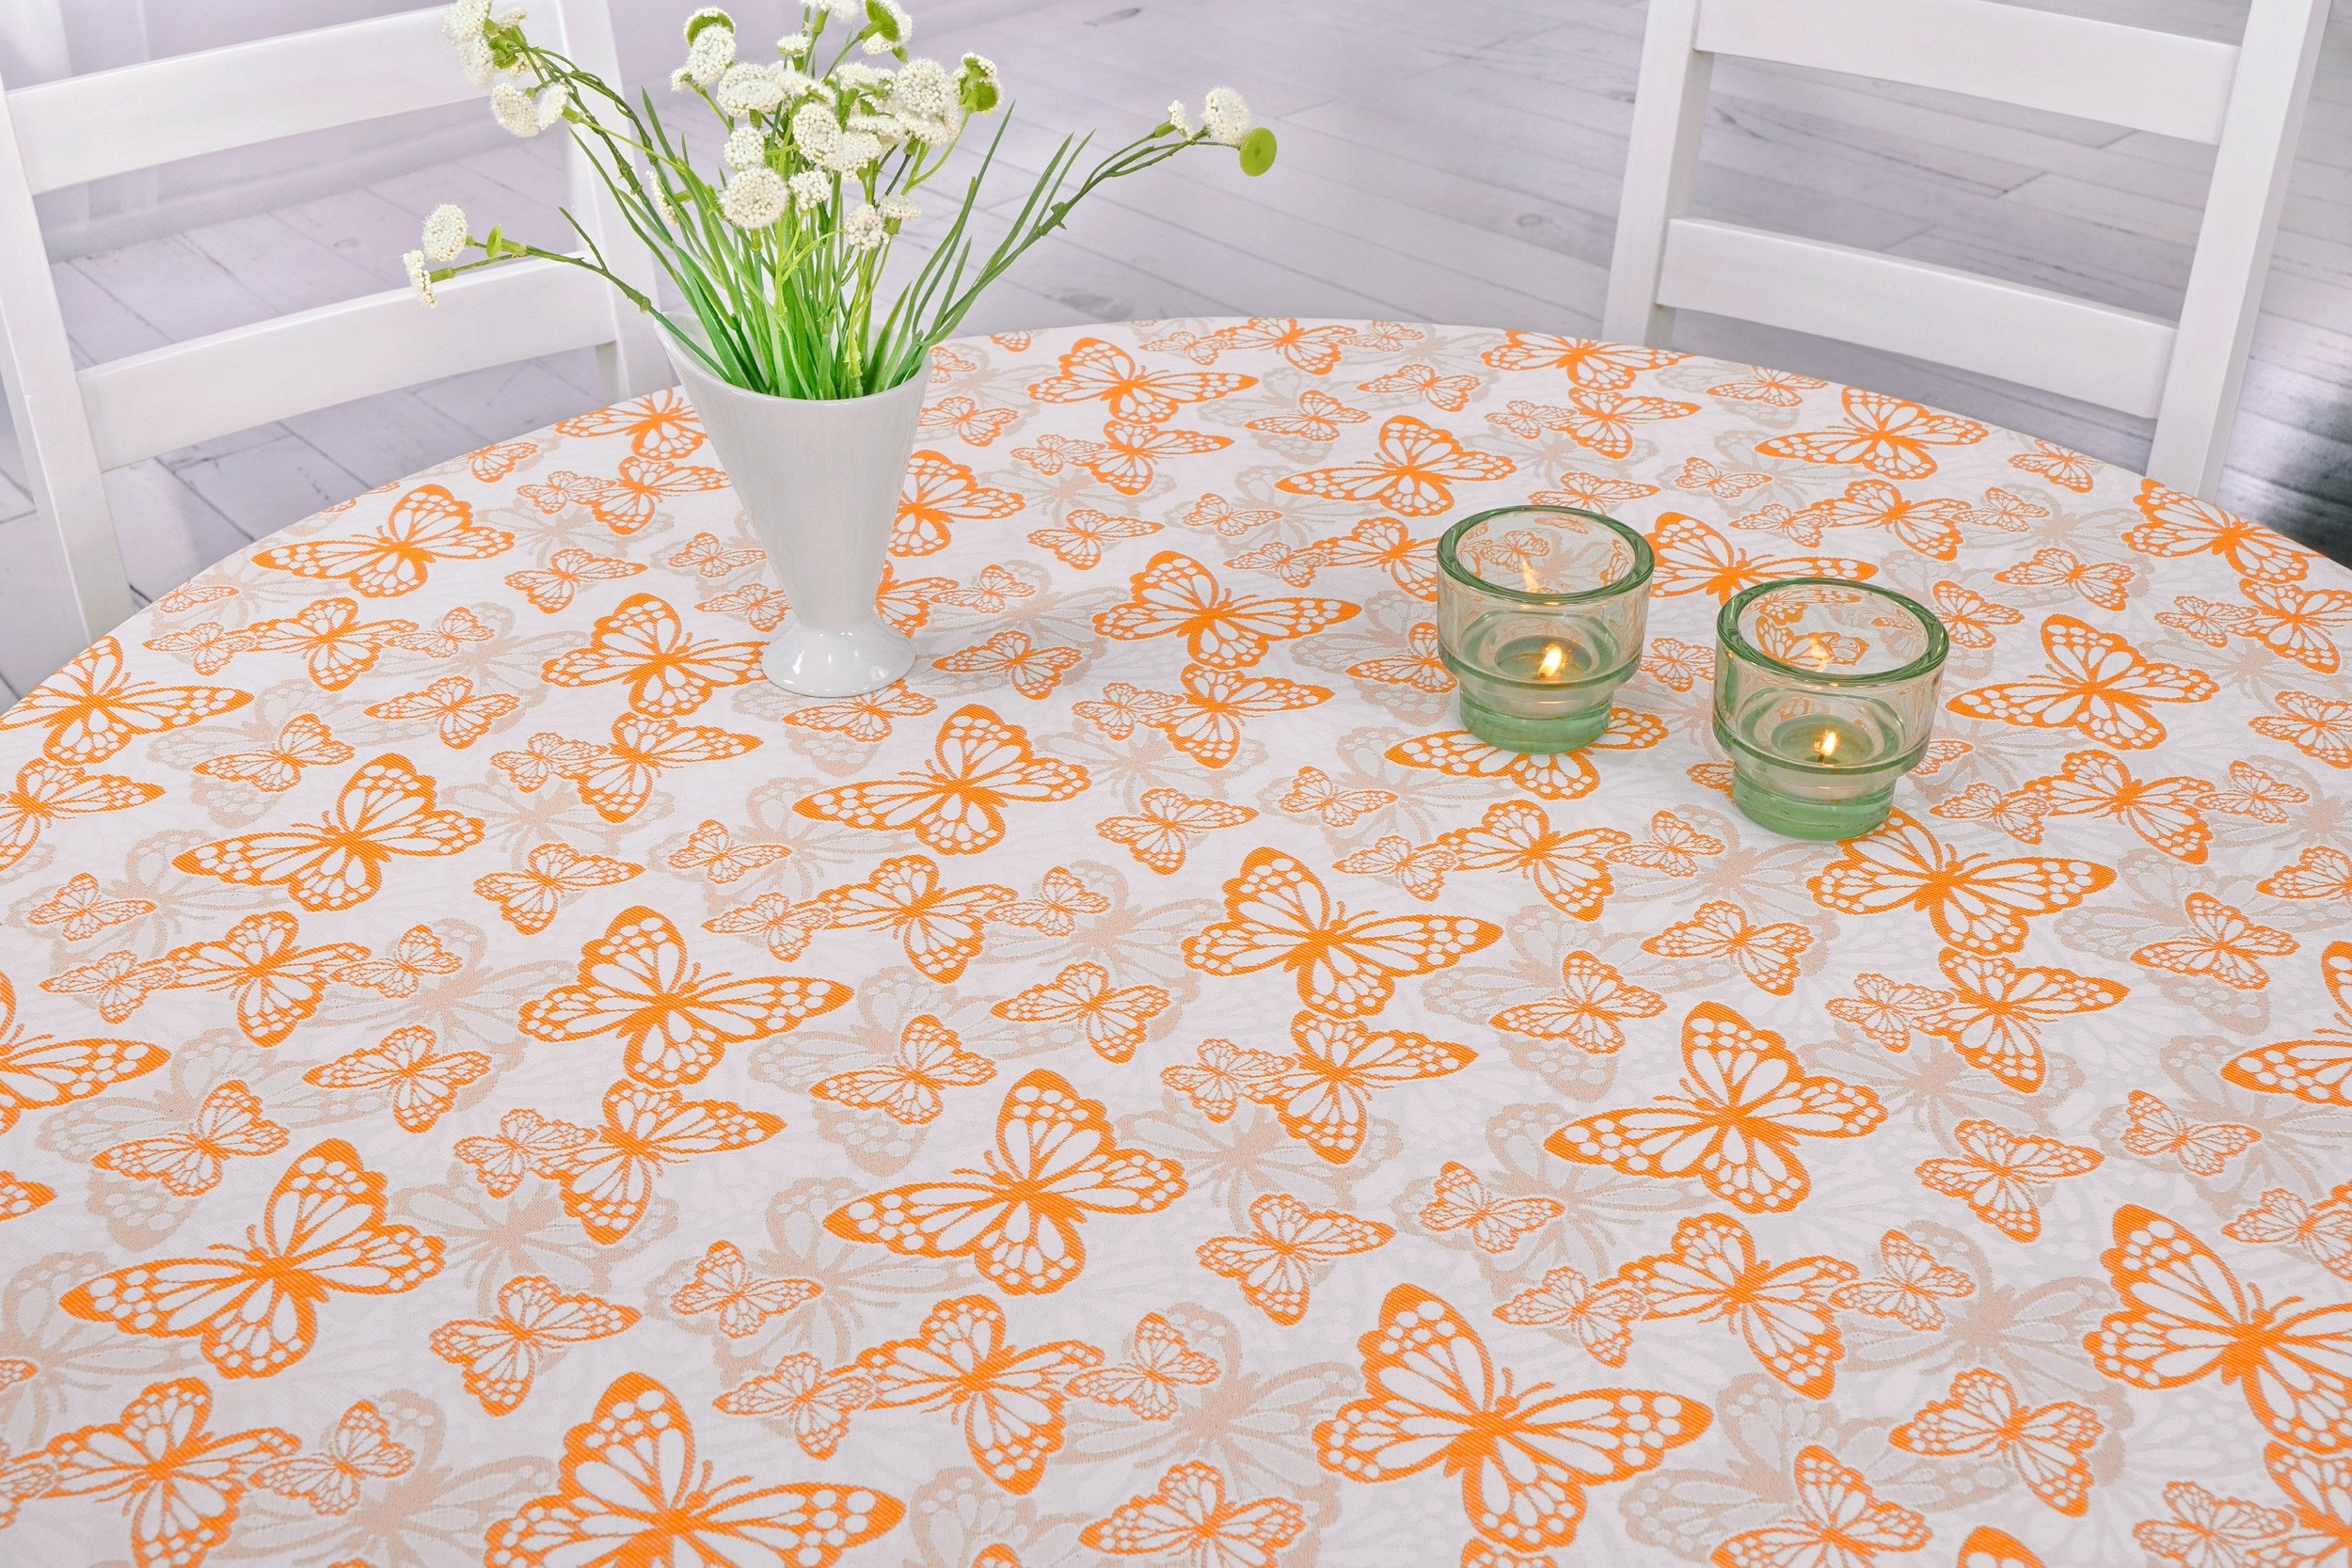 Fleckgeschützte Tischdecke Weiß Orange Muster Springtime Breite 130 cm OVAL